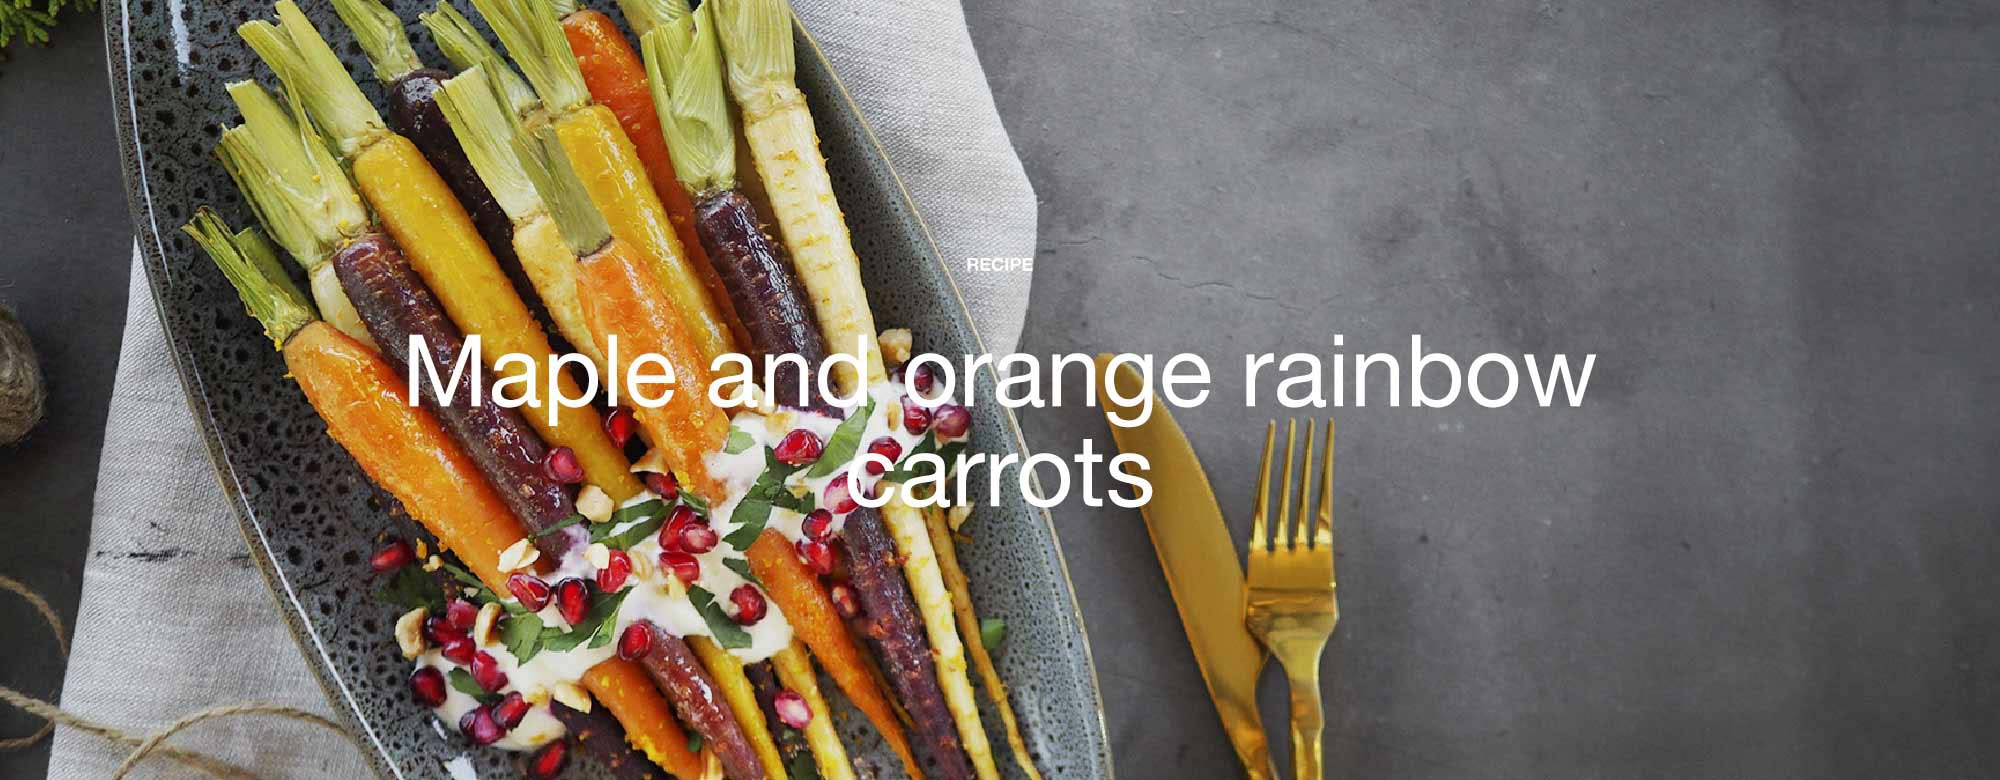 Maple and orange rainbow carrots